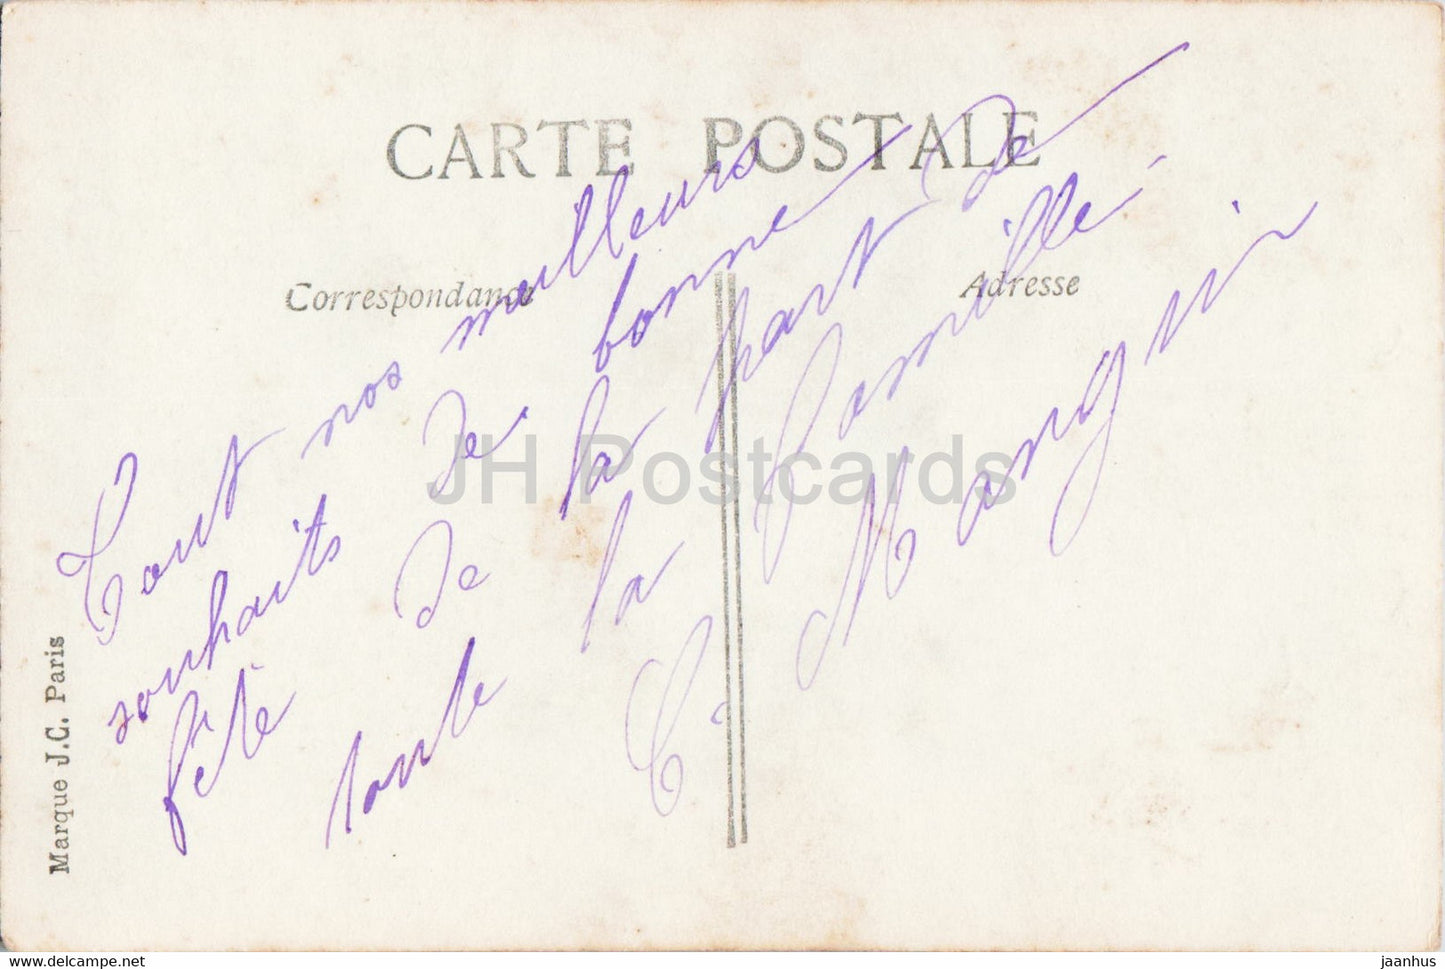 Ostergrußkarte – Joyeuse Fete – Mann – 2180 – JC Paris – alte Postkarte – Frankreich – gebraucht